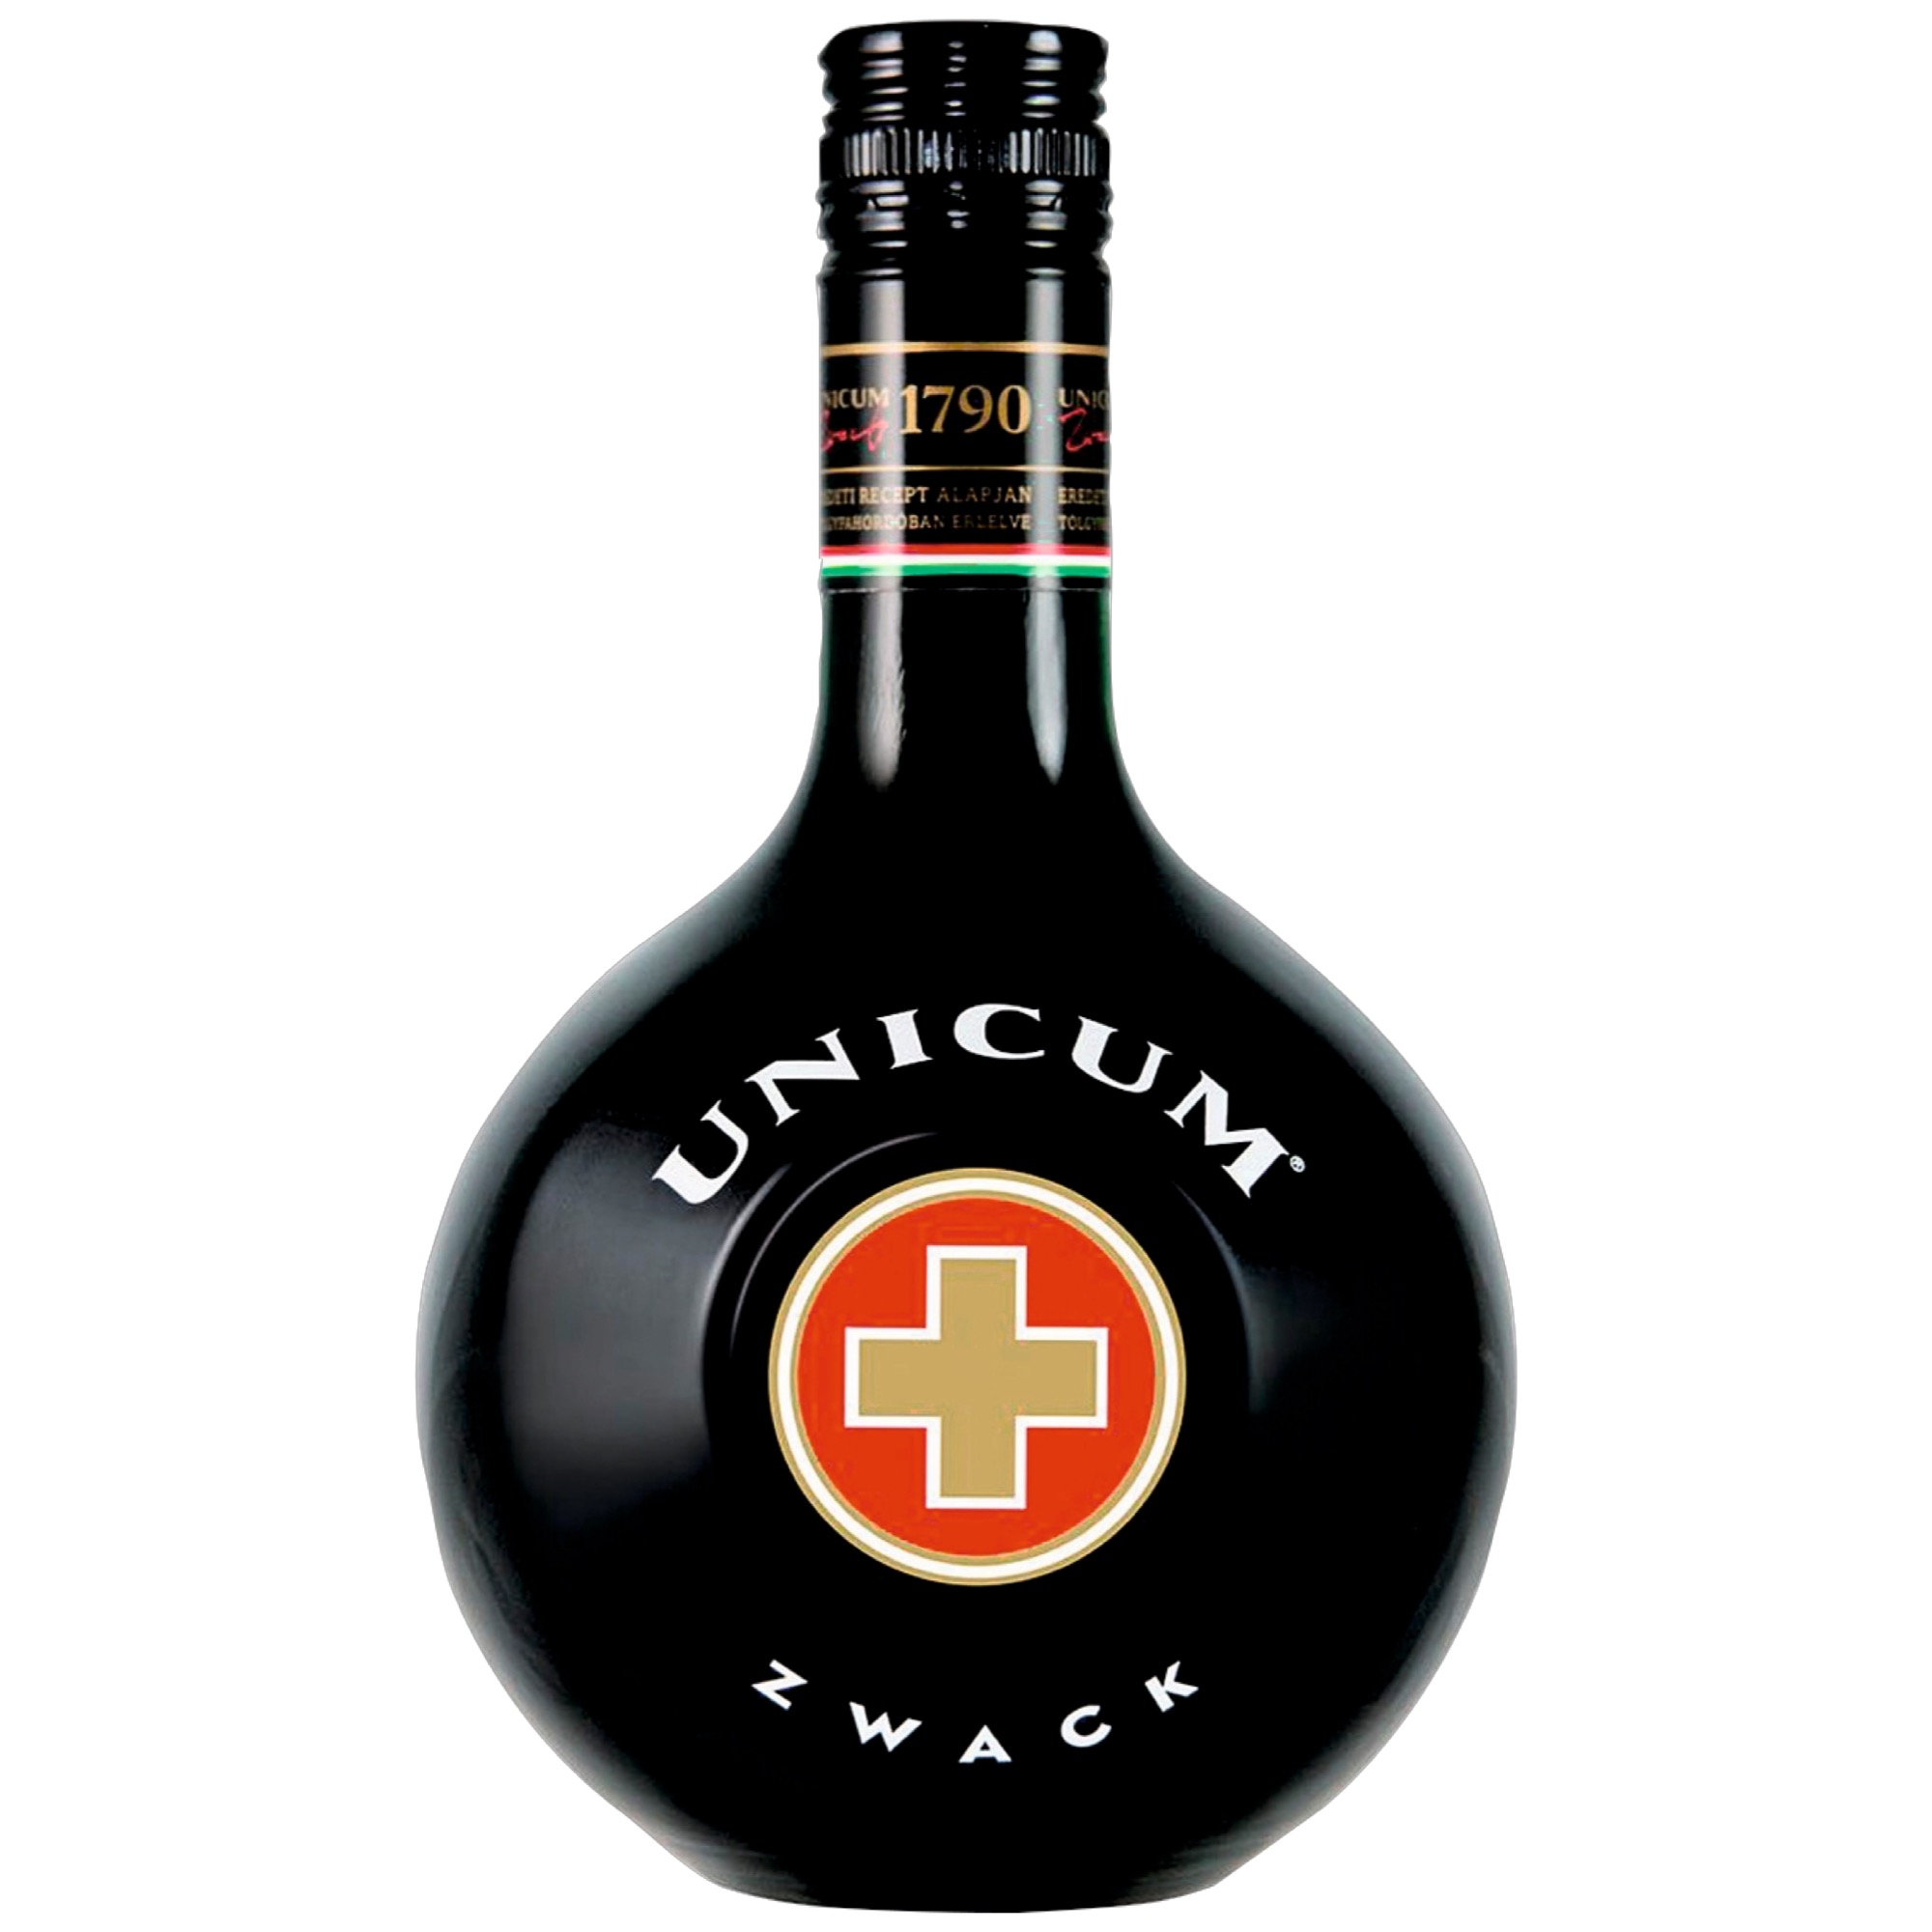 Zwack Unicum 0,7l